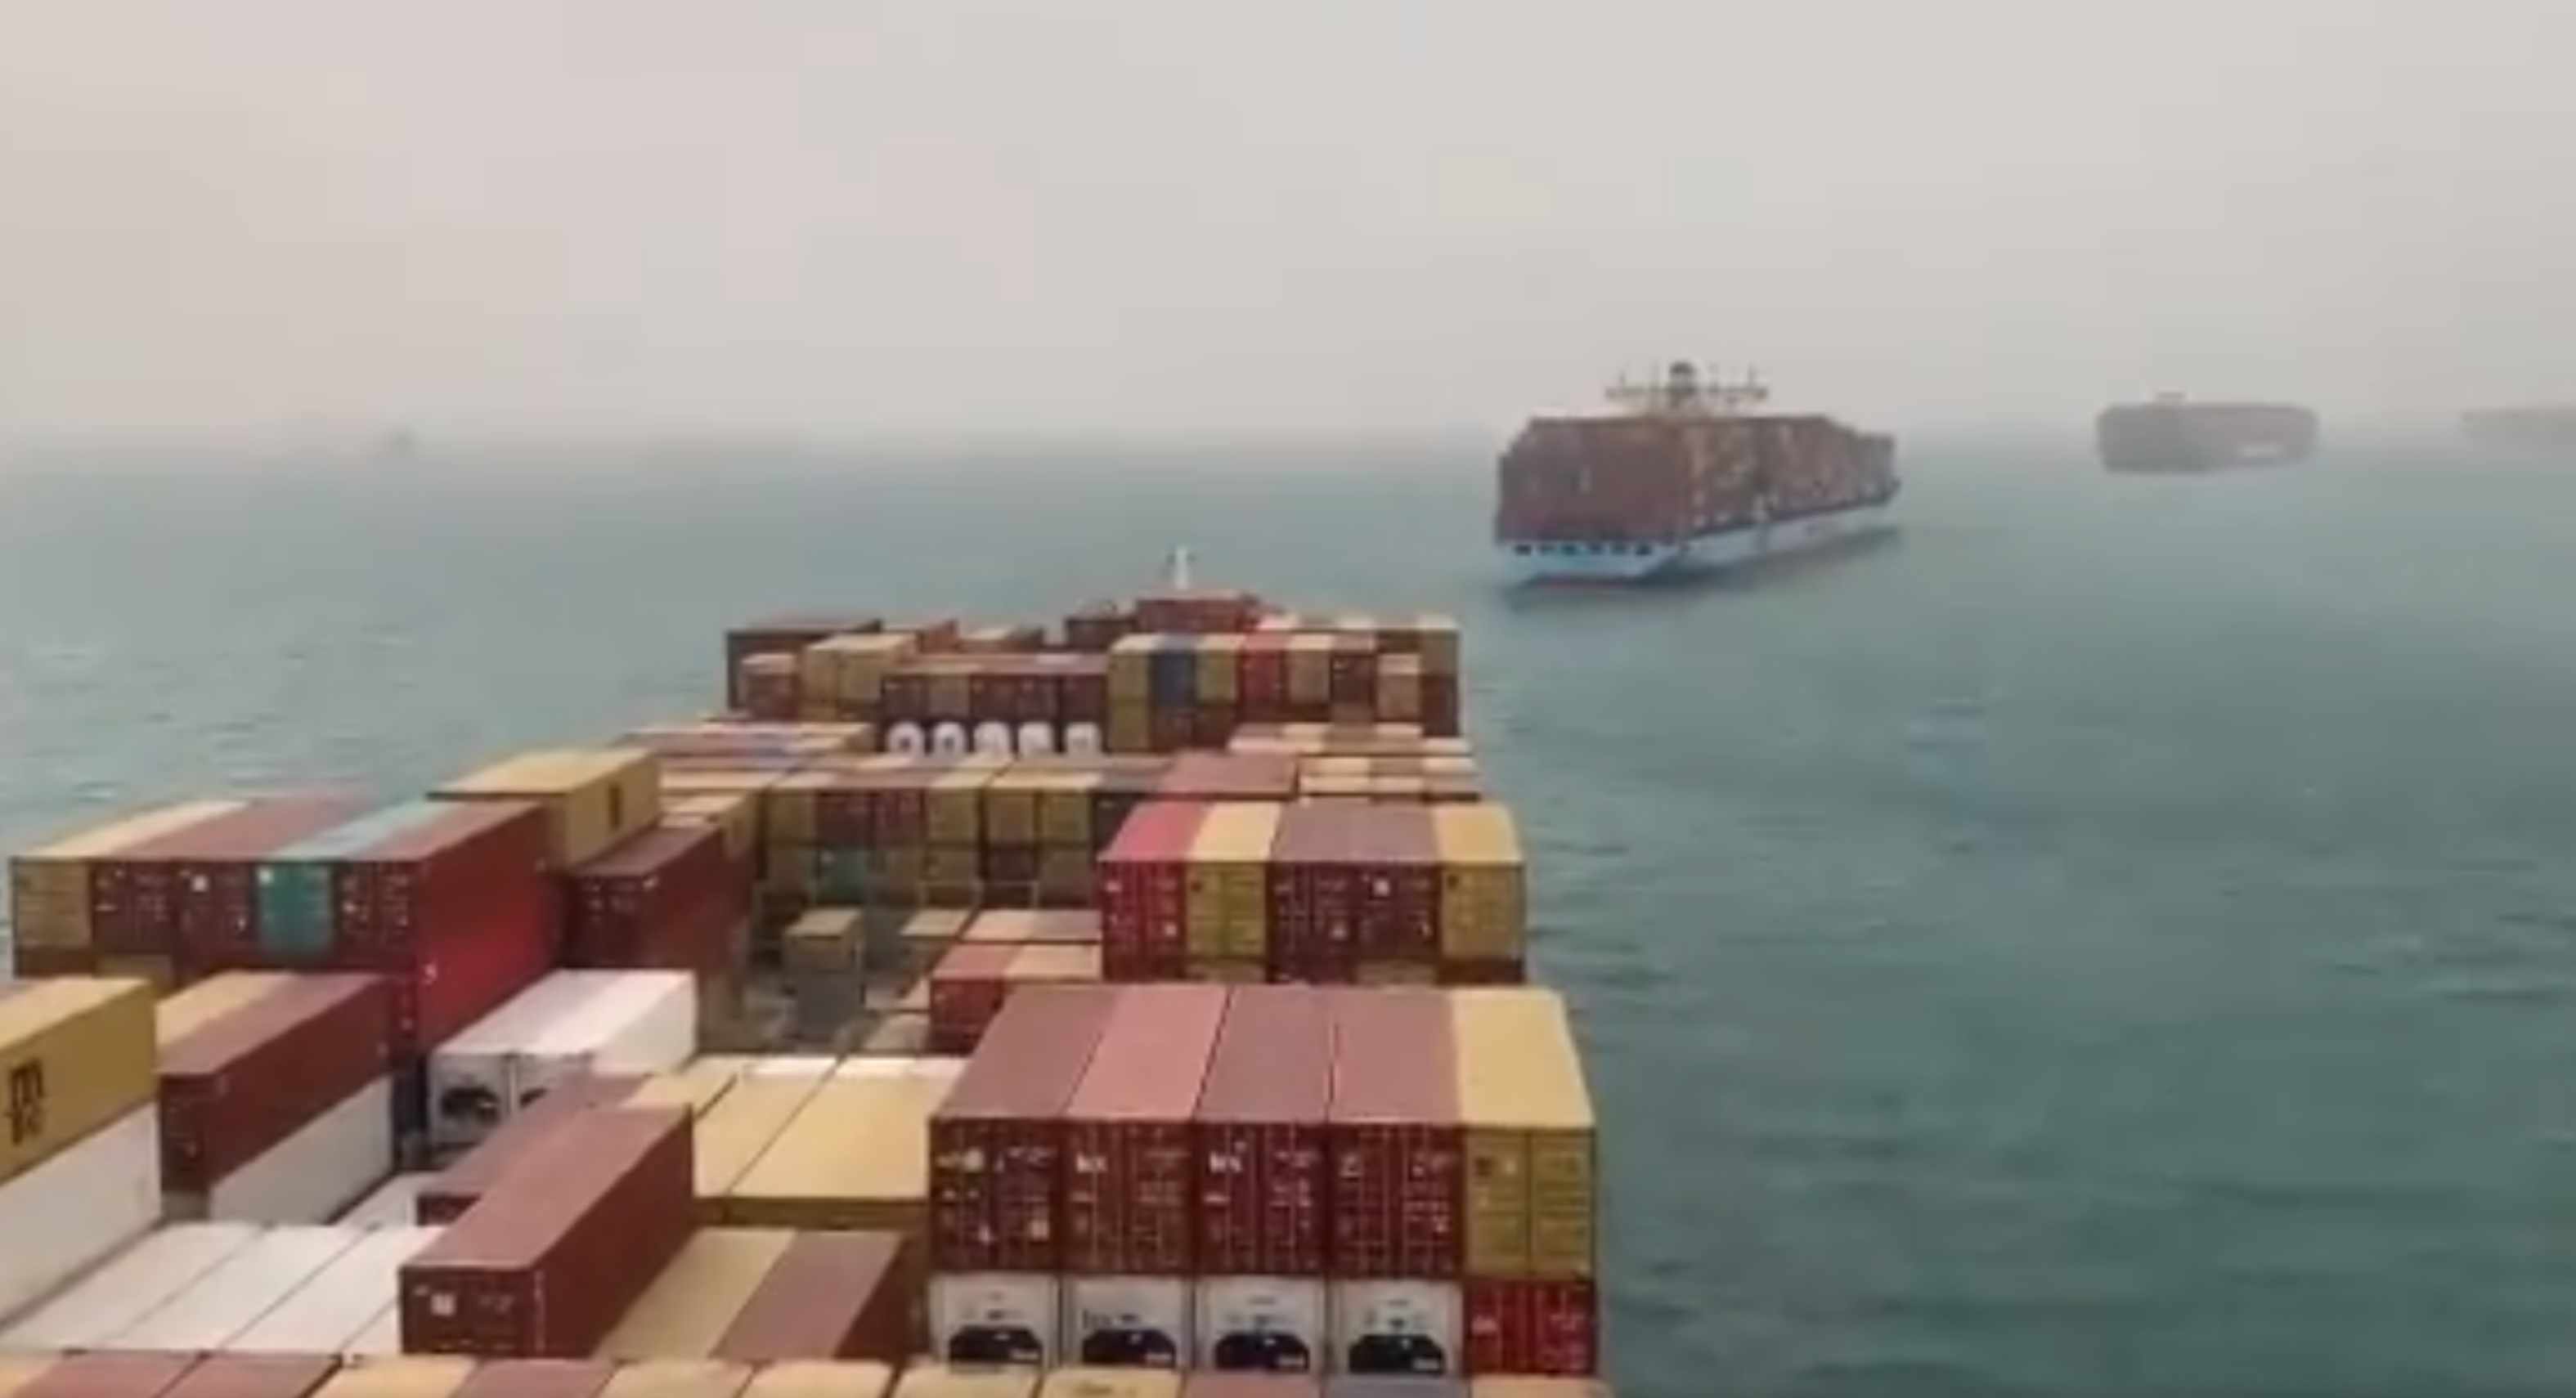 Canal de Suez, el tráfico naval desde las alturas